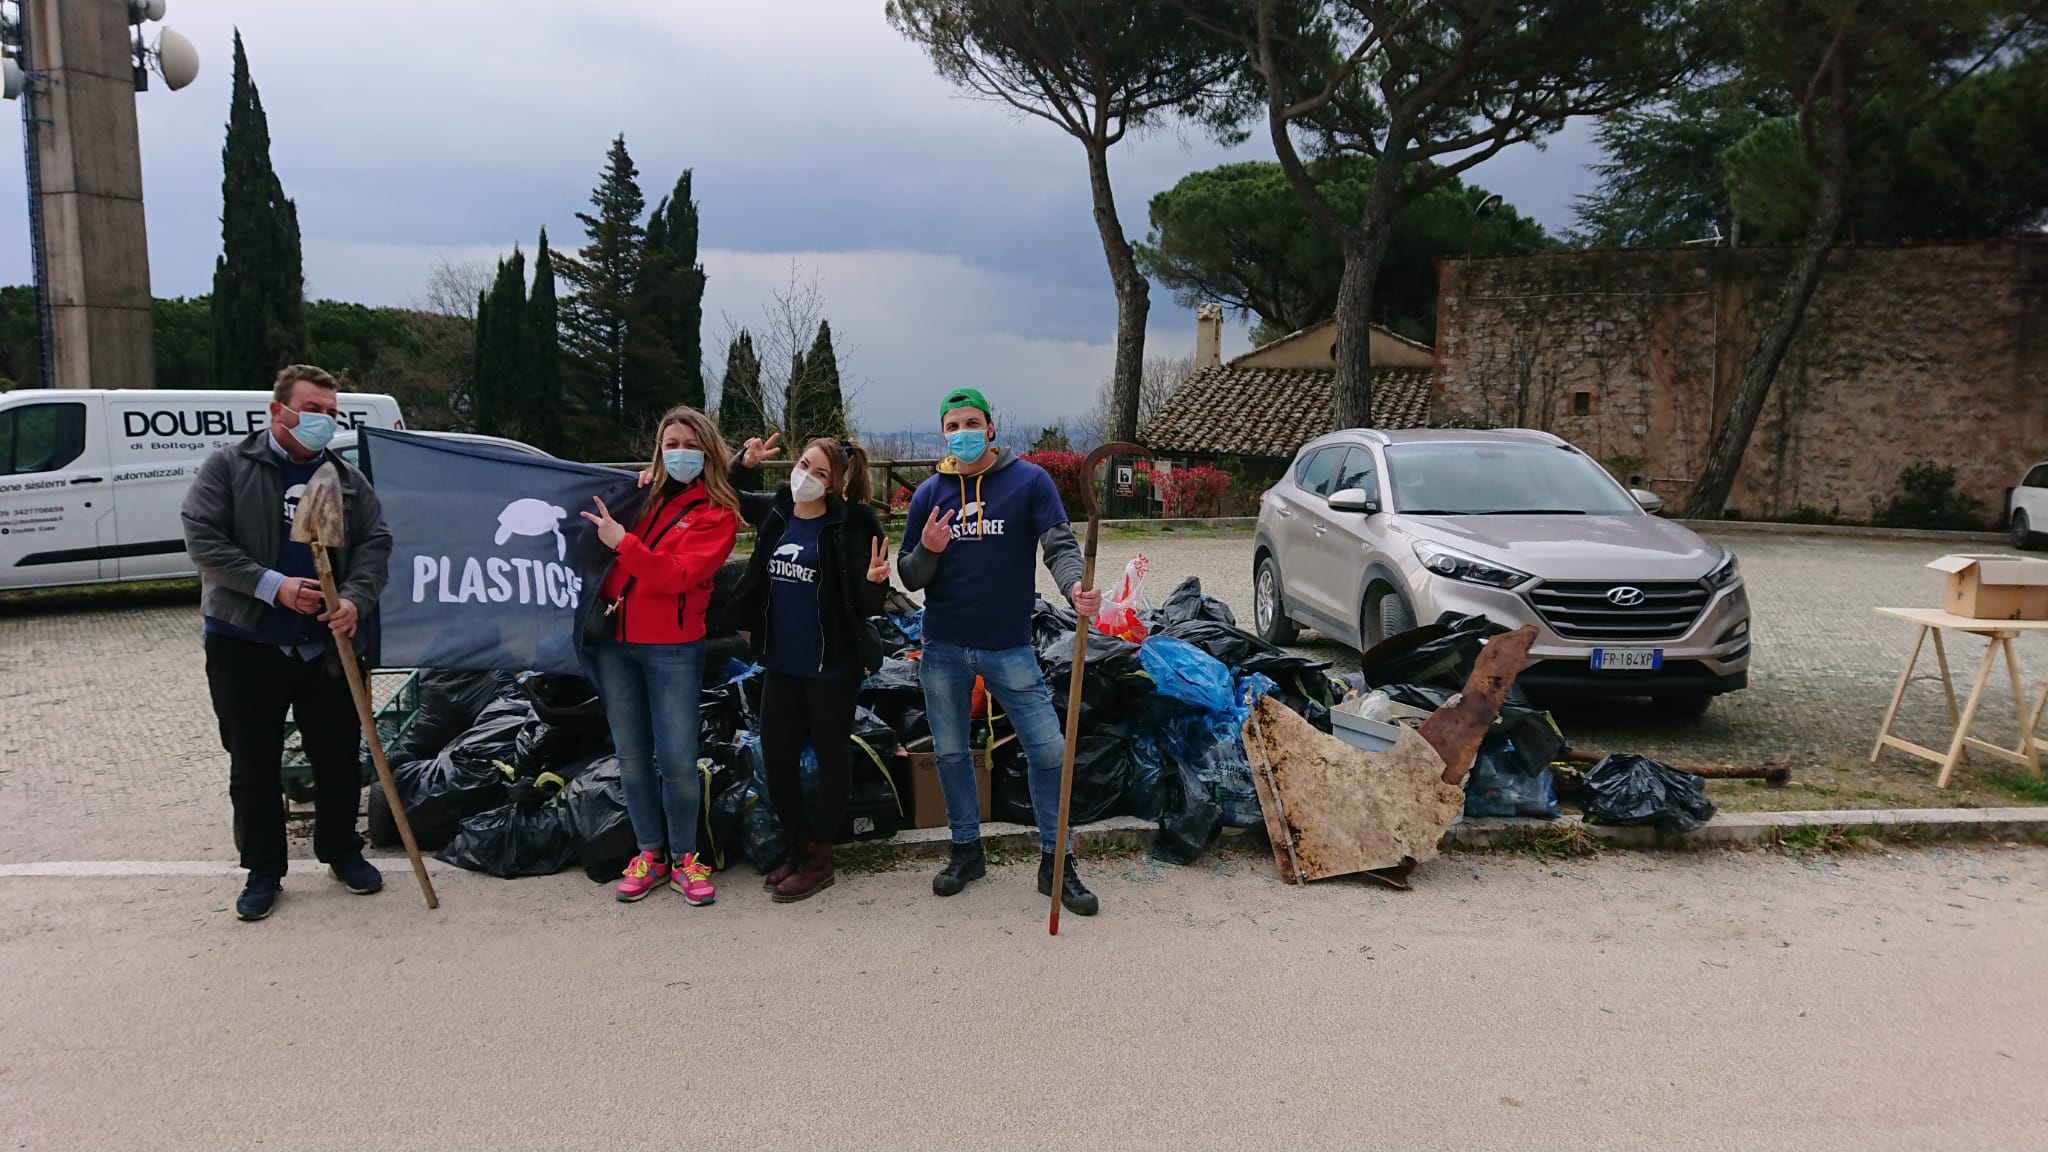 Plastic Free Onlus : alcuni dei volontari che hanno partecipato all'iniziativa